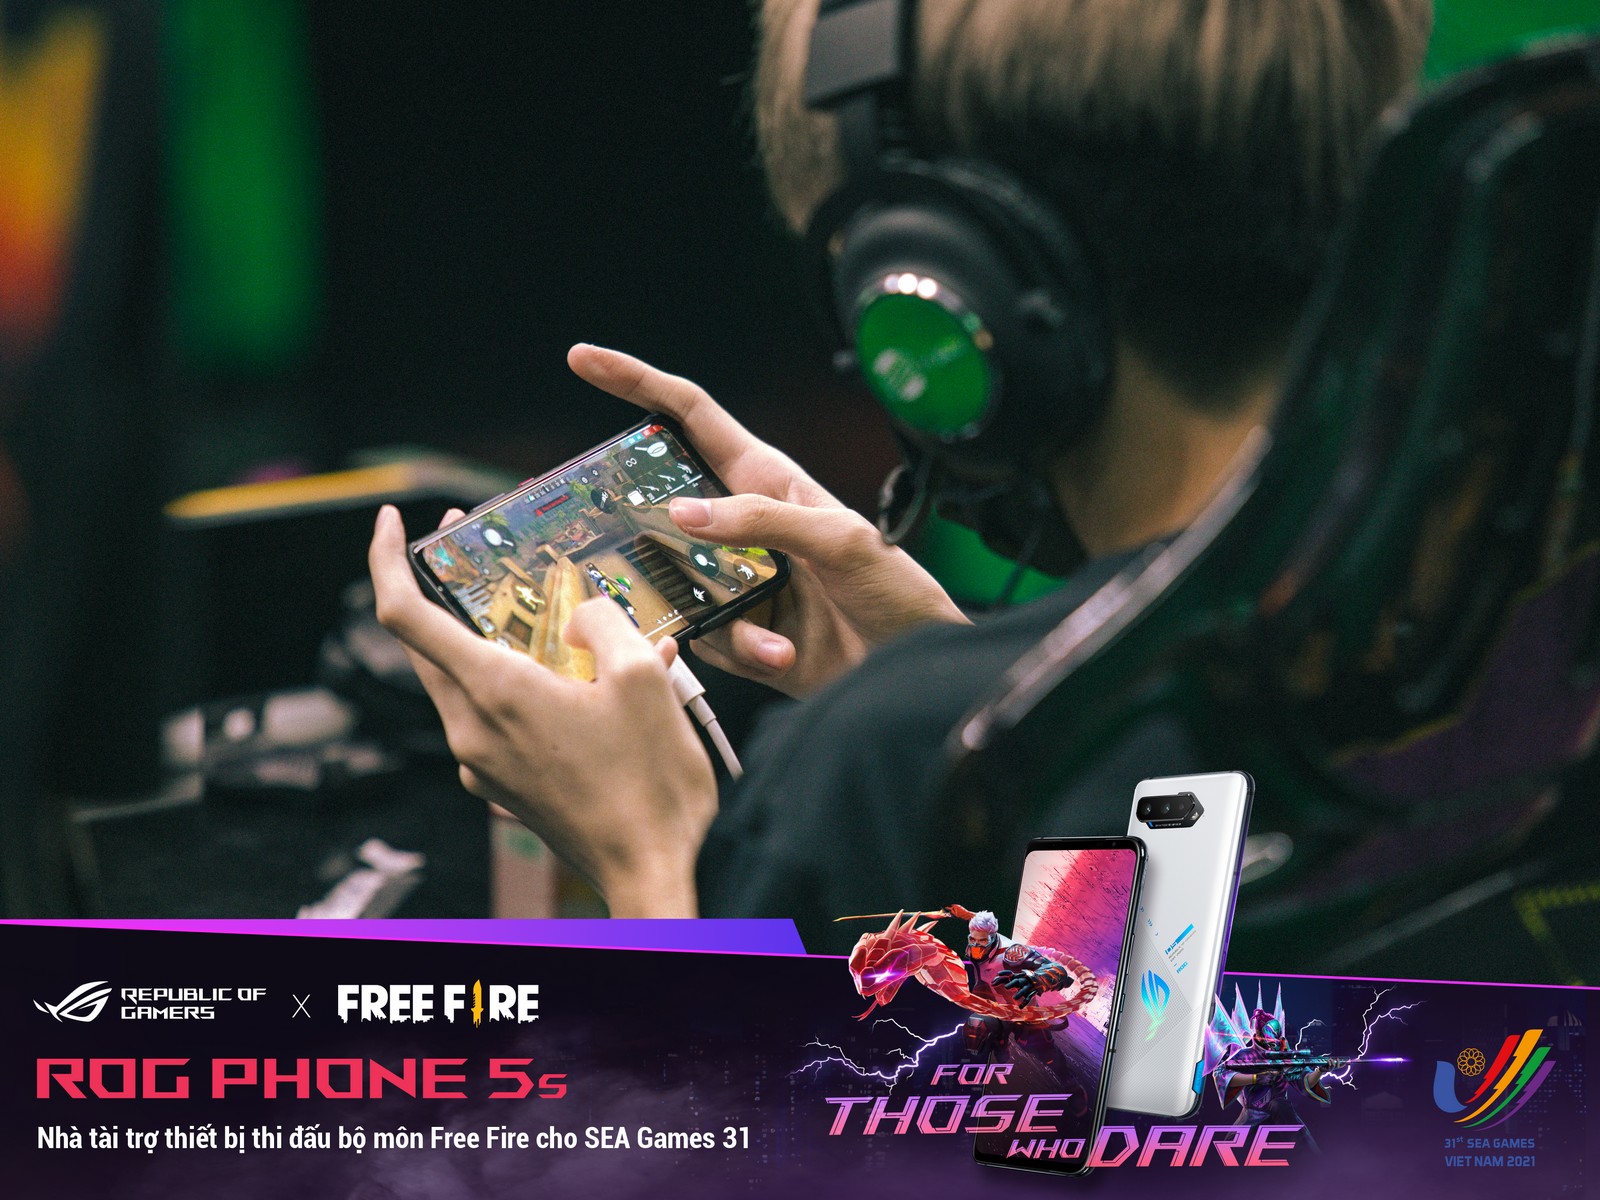 ROG Phone 5s: Thiết bị thi đấu chính thức của bộ môn Free Fire tại SEA Games 31